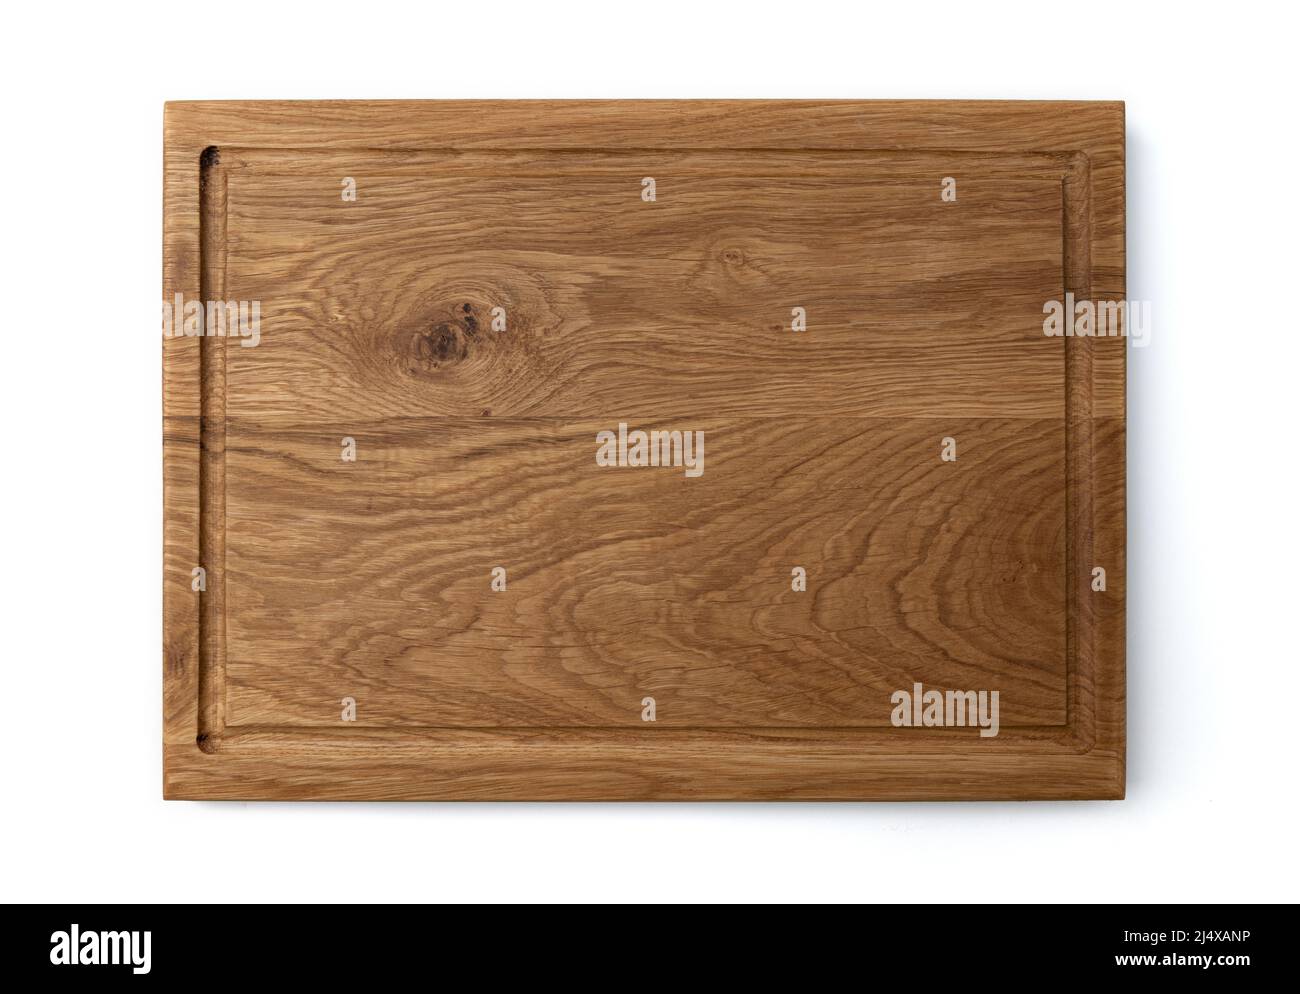 nouvelle planche à découper rectangulaire en bois, vue de dessus, isolée sur fond blanc Banque D'Images